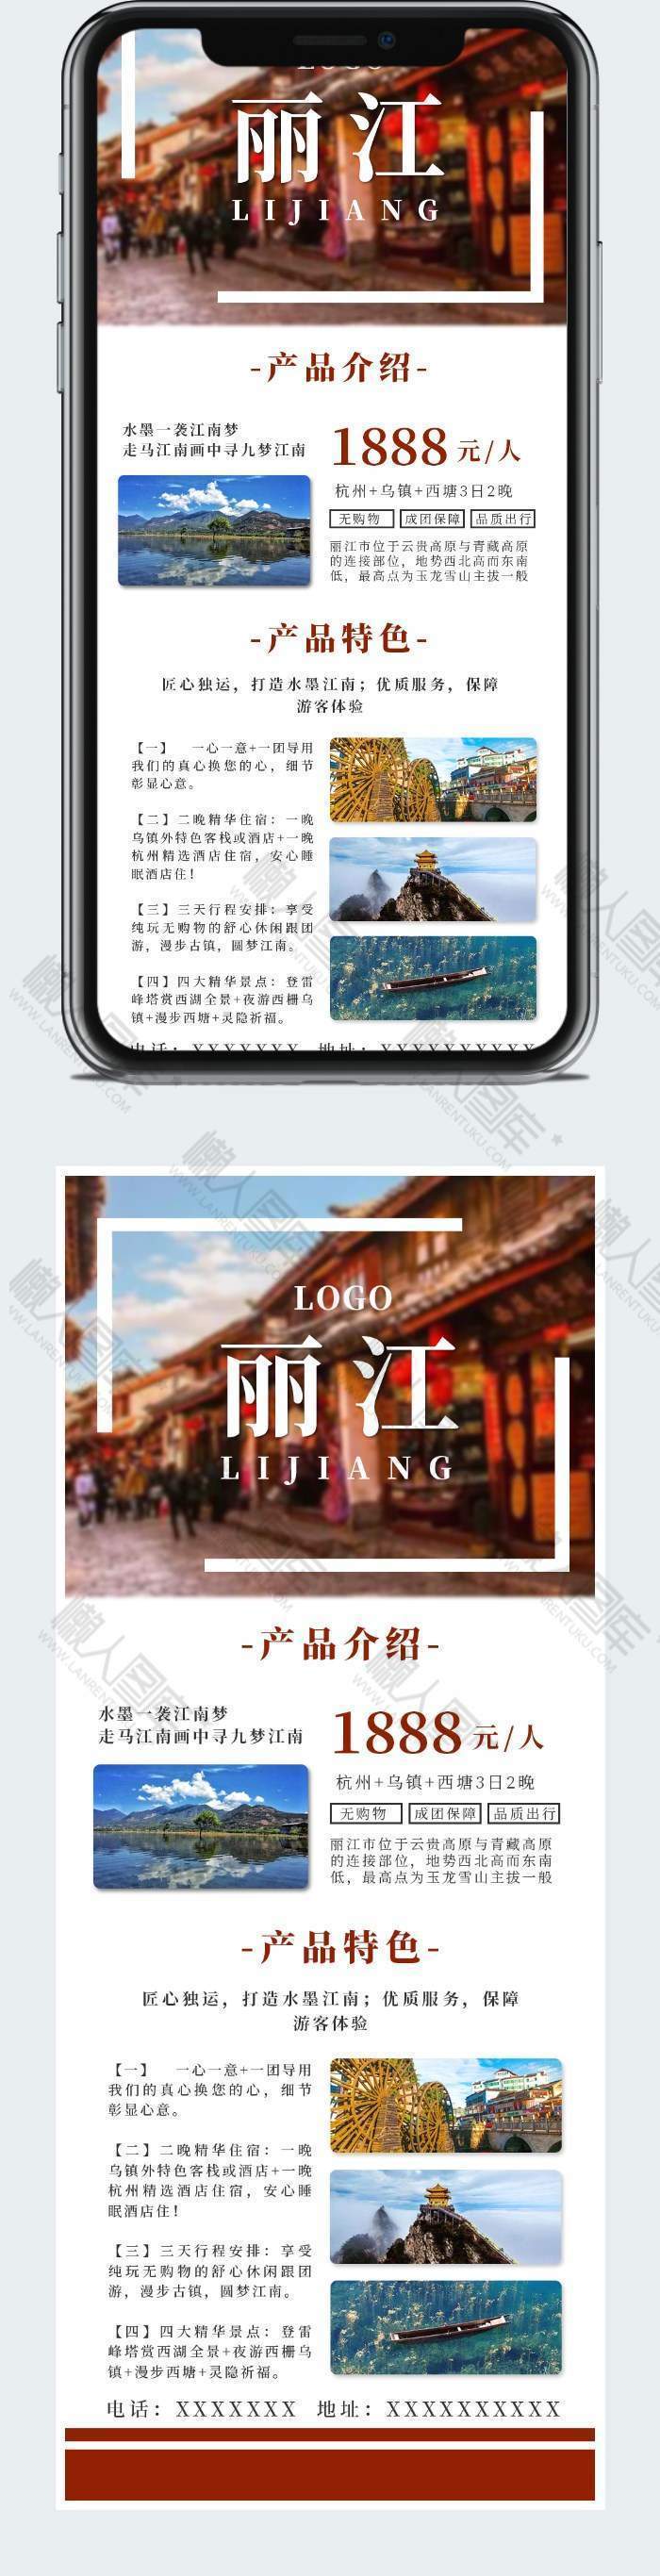 红色简约大气旅游丽江社交媒体营销长图